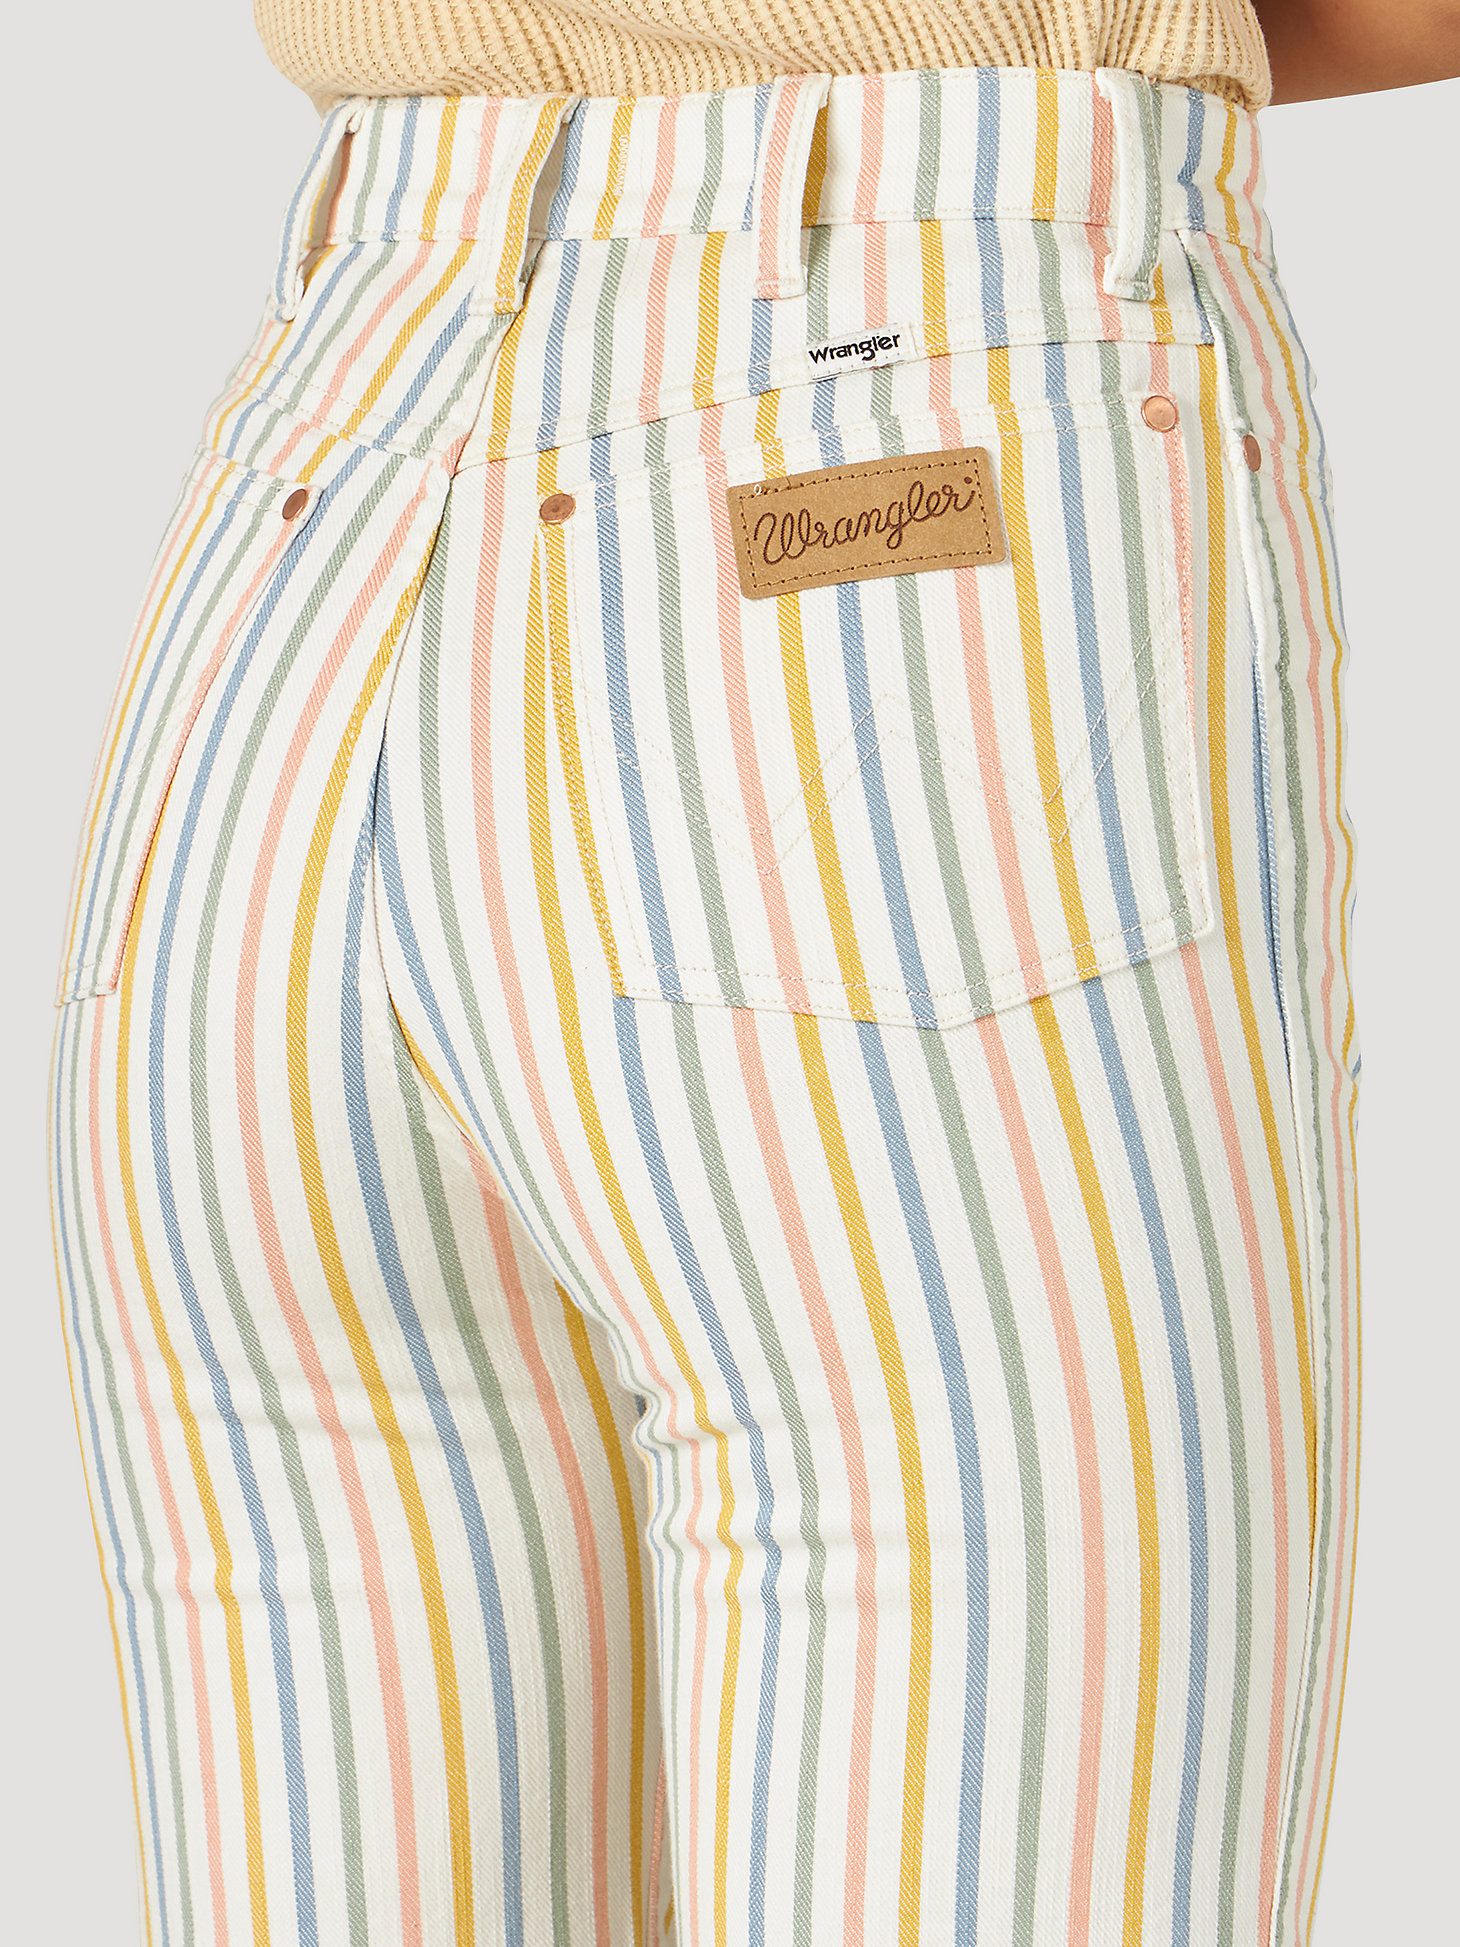 Women's Wanderer 622 Rainbow Stripe Flare Jean in Rainbow Stripe alternative view 2